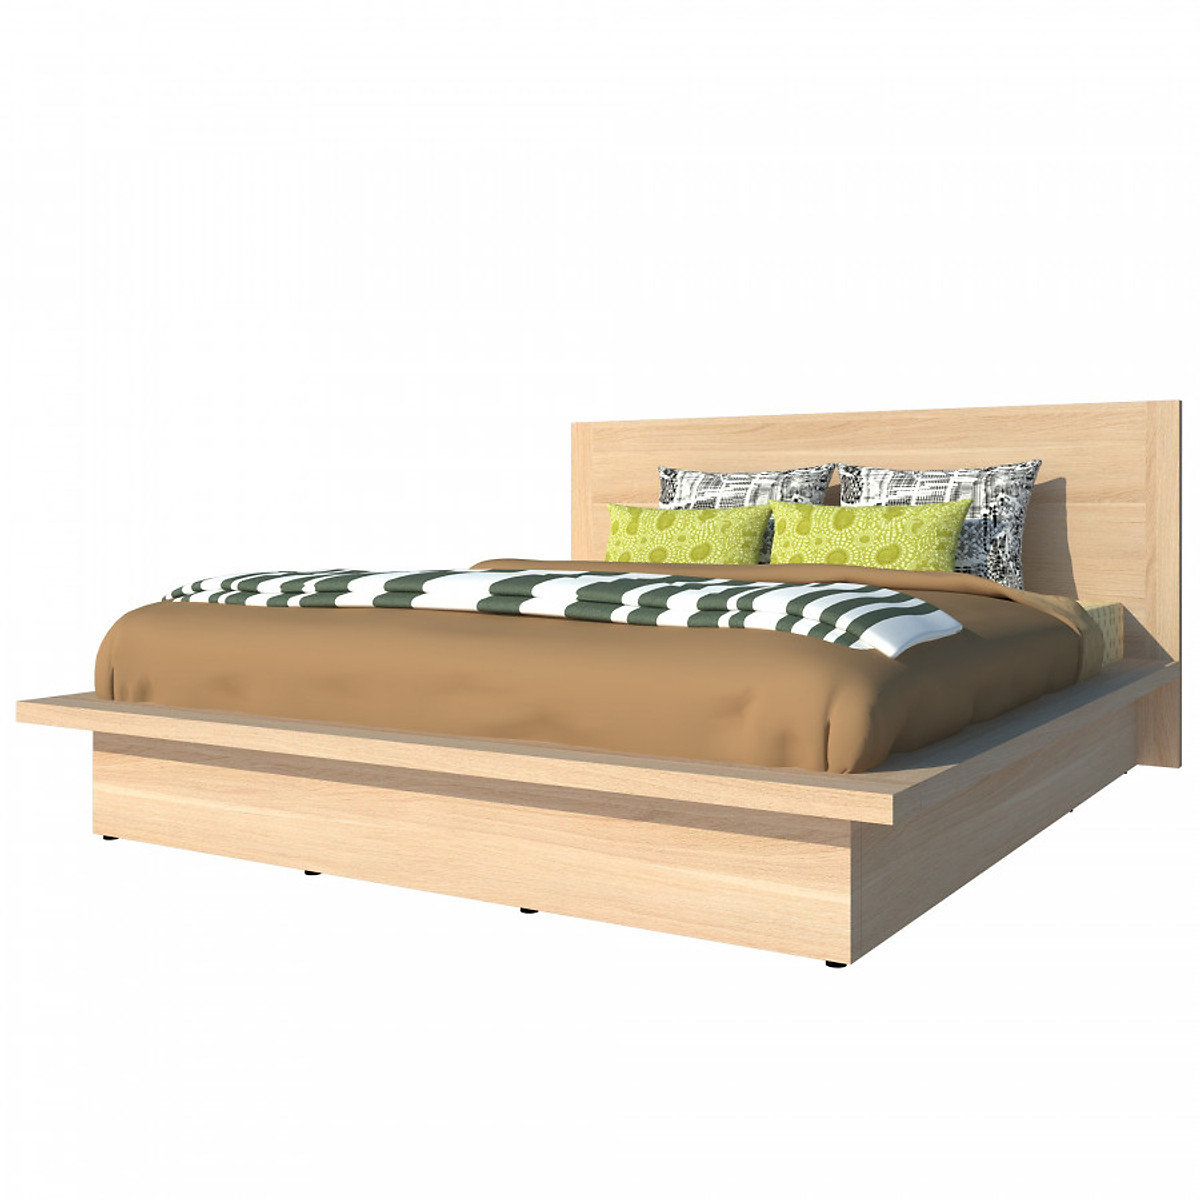 Giường ngủ cao cấp Tundo màu vàng sồi 160cm x 200cm